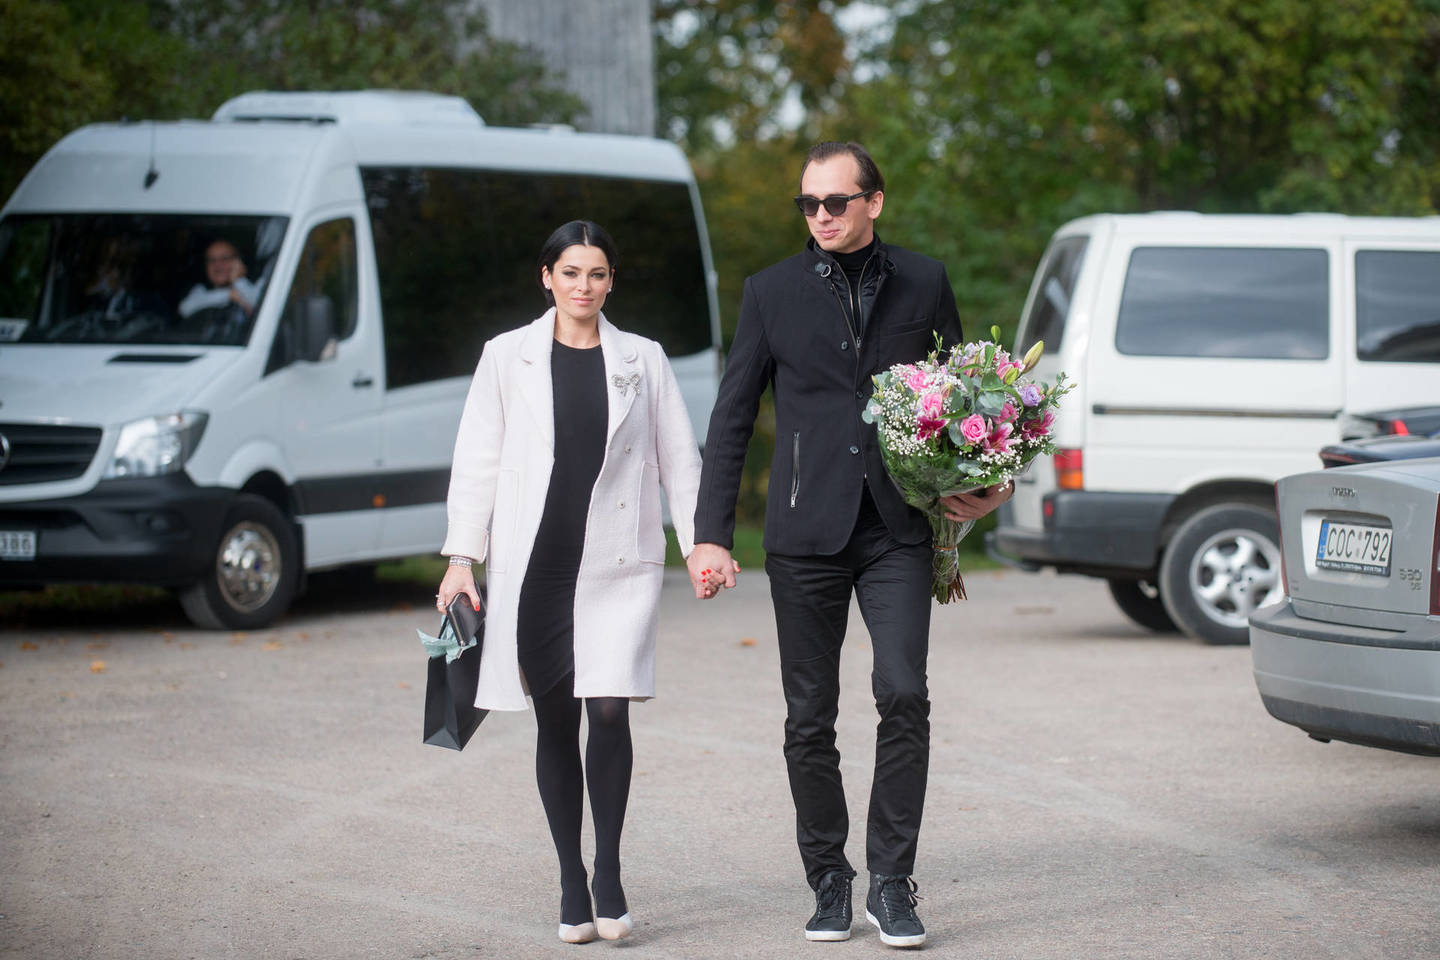 Šiemet bene labiausiai apkalbėtas buvo stilistės Agnės Jagelavičiūtės (33 m.) ir jos vyro verslininko Manto Volkaus (34 m.) pirmagimis.